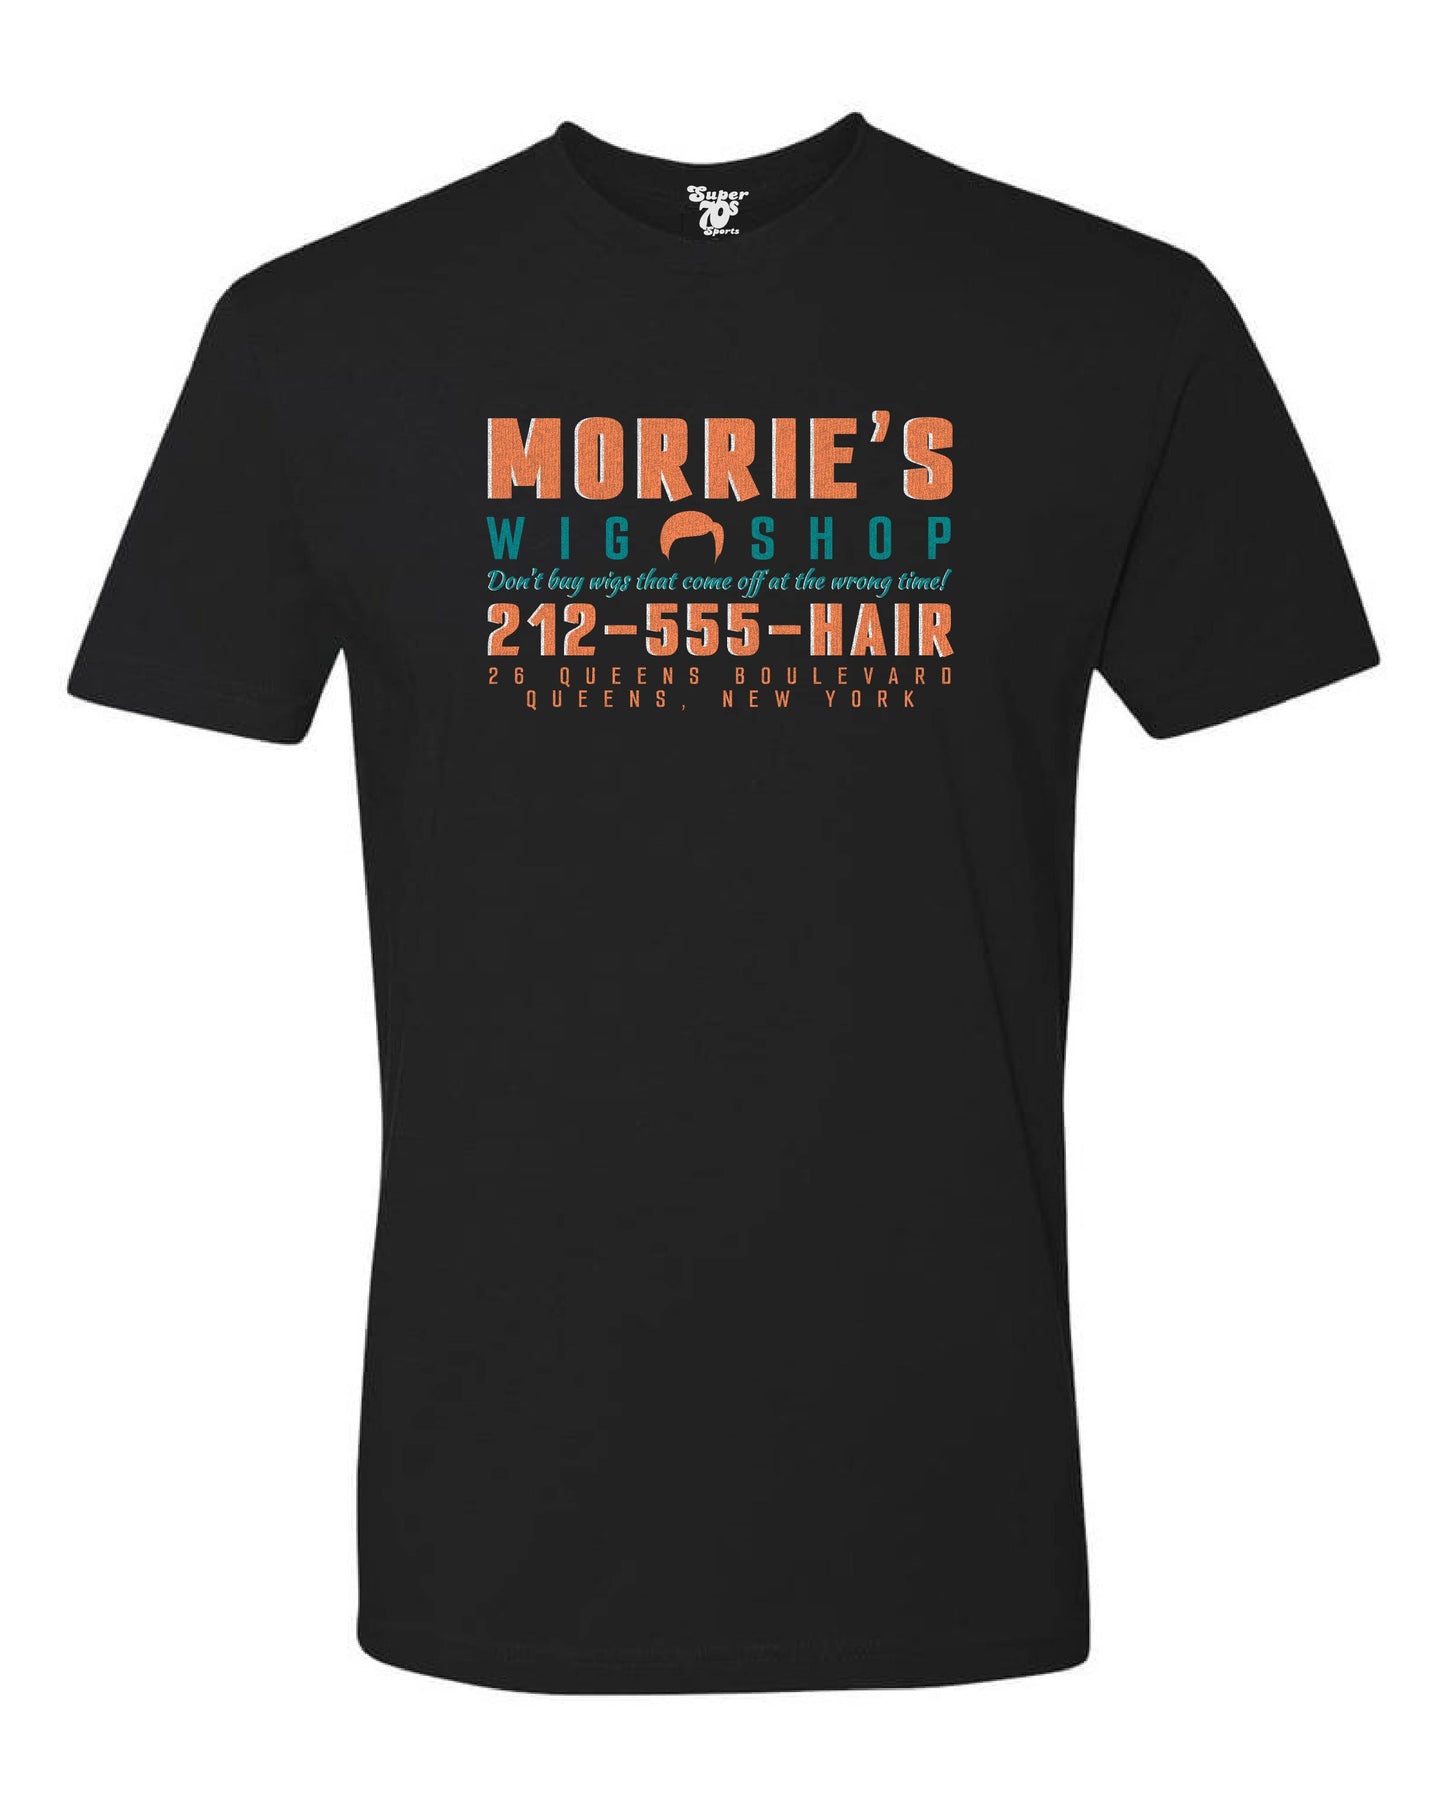 Morrie's Wig Shop Tee